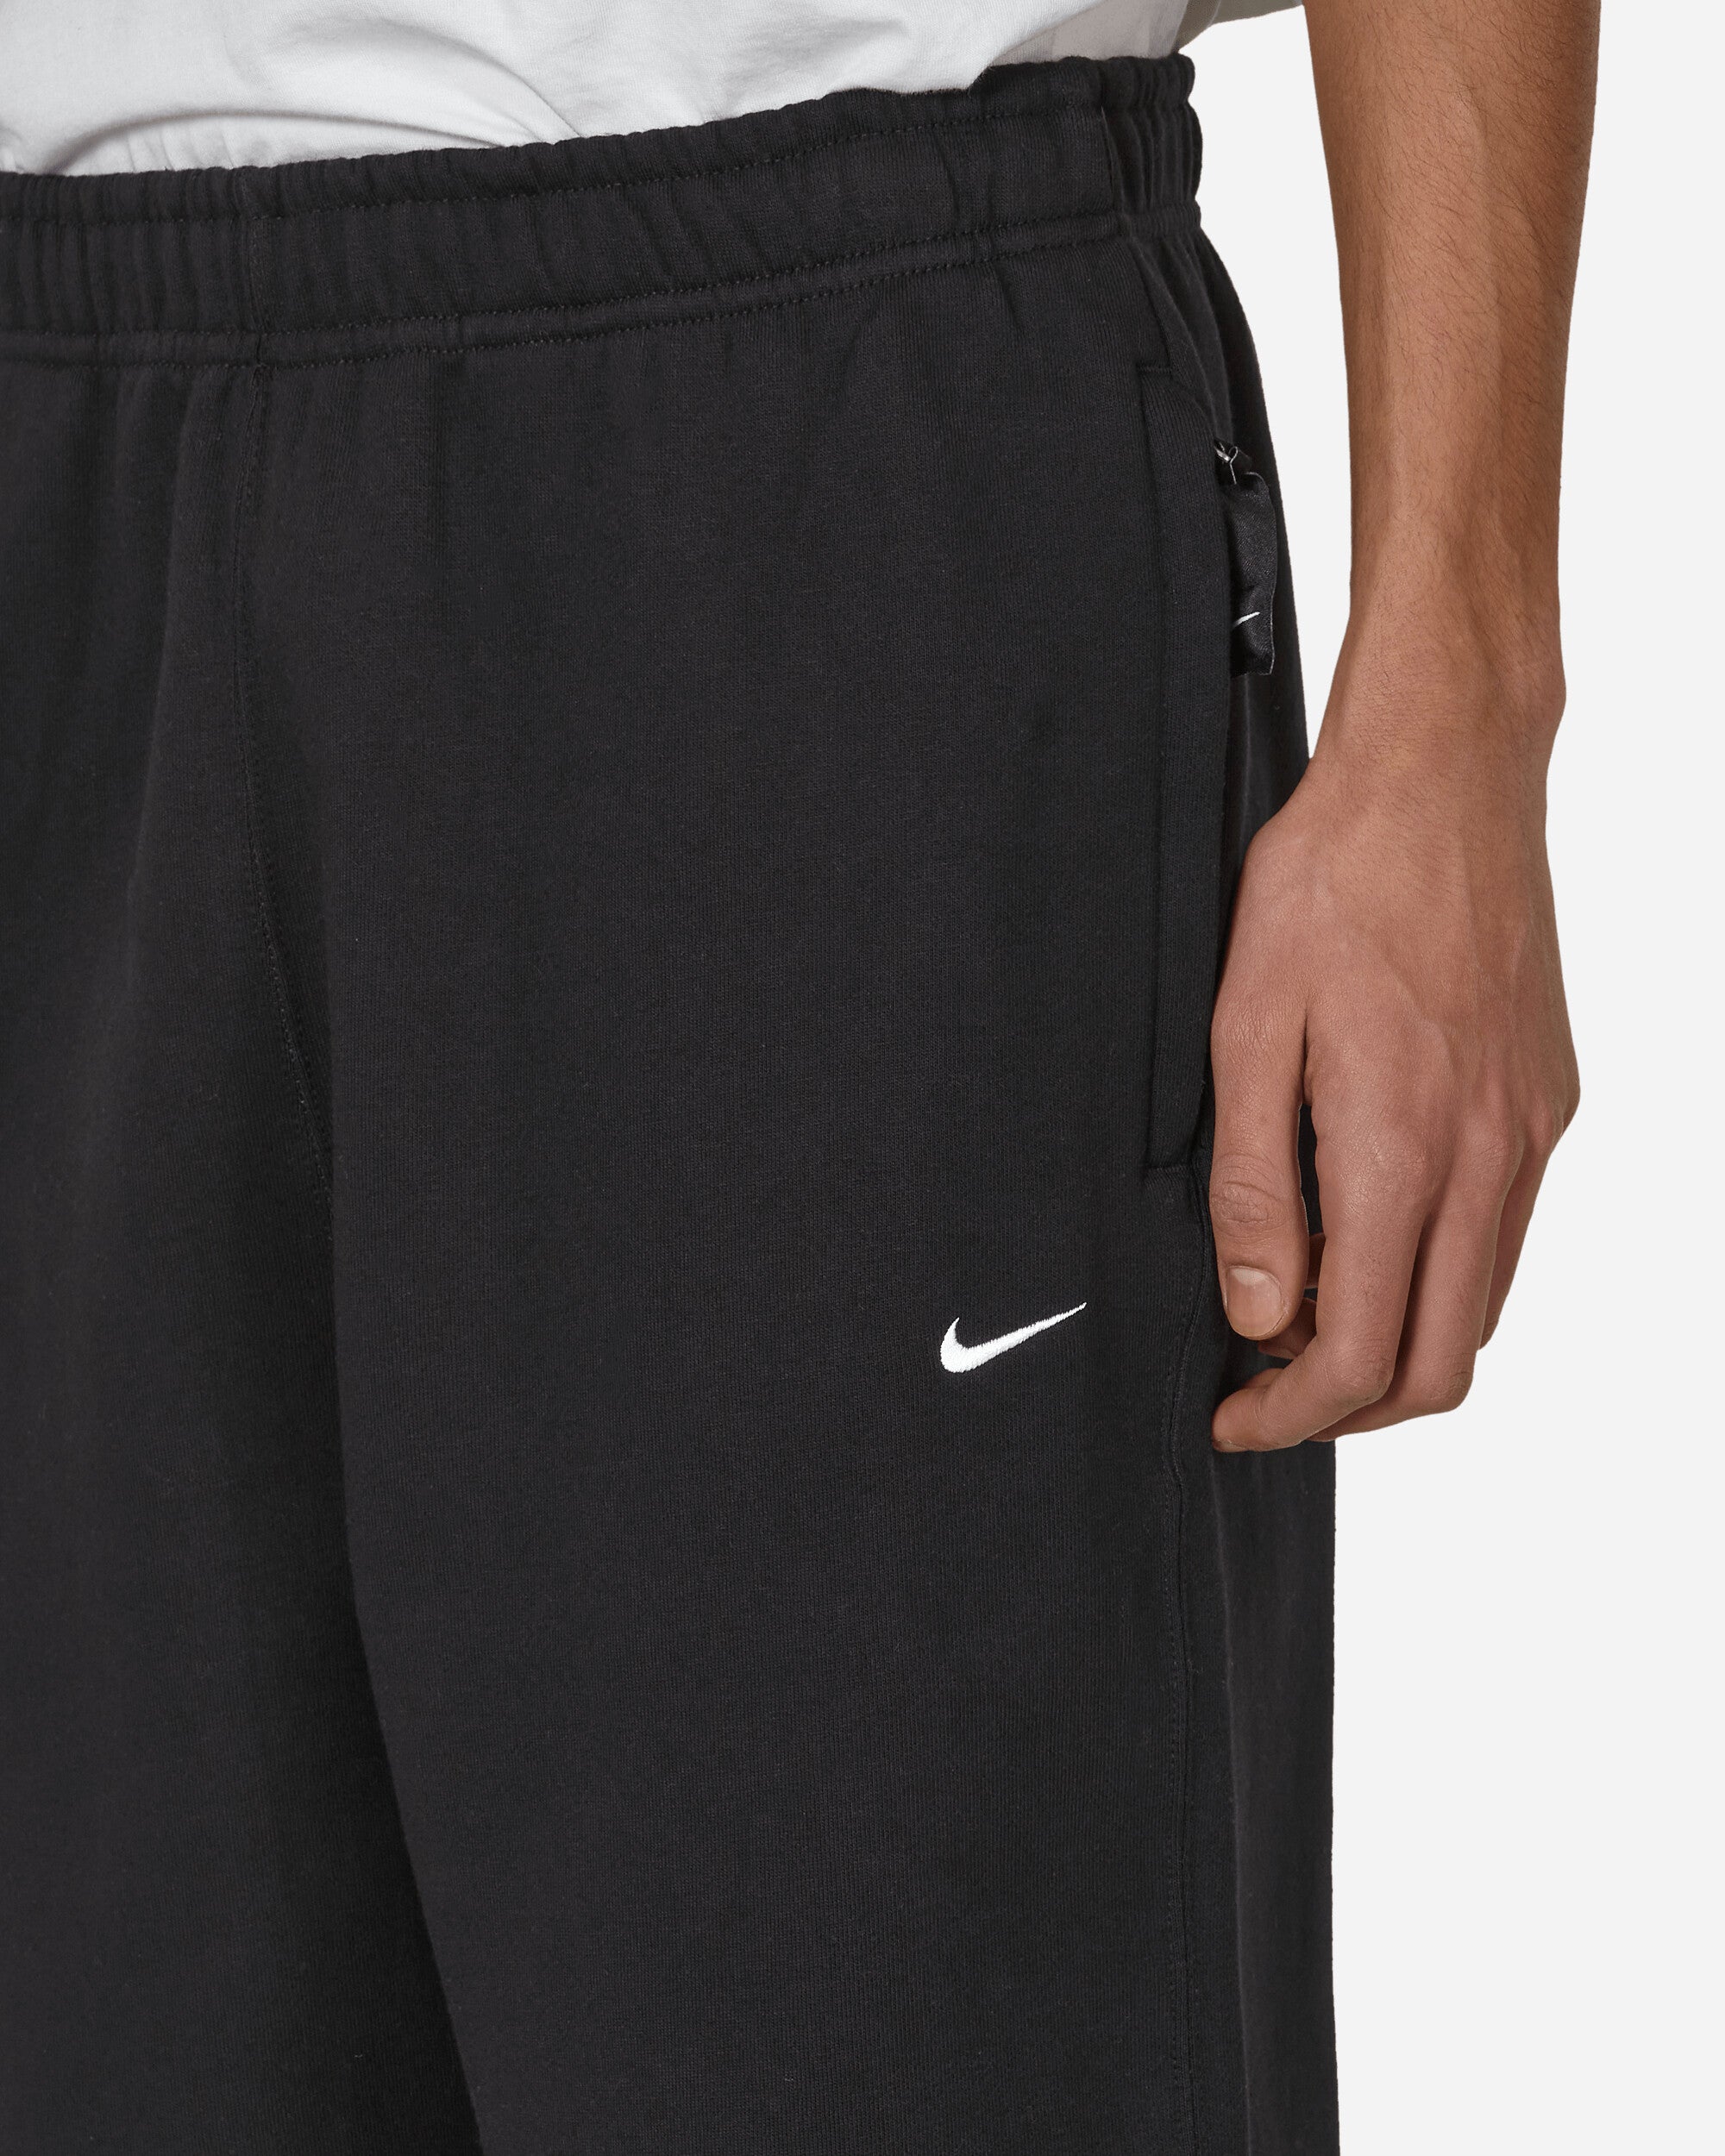 Nike M Nk Solo Swsh Flc Cf Pant Black/White Pants Sweatpants DX1364-010